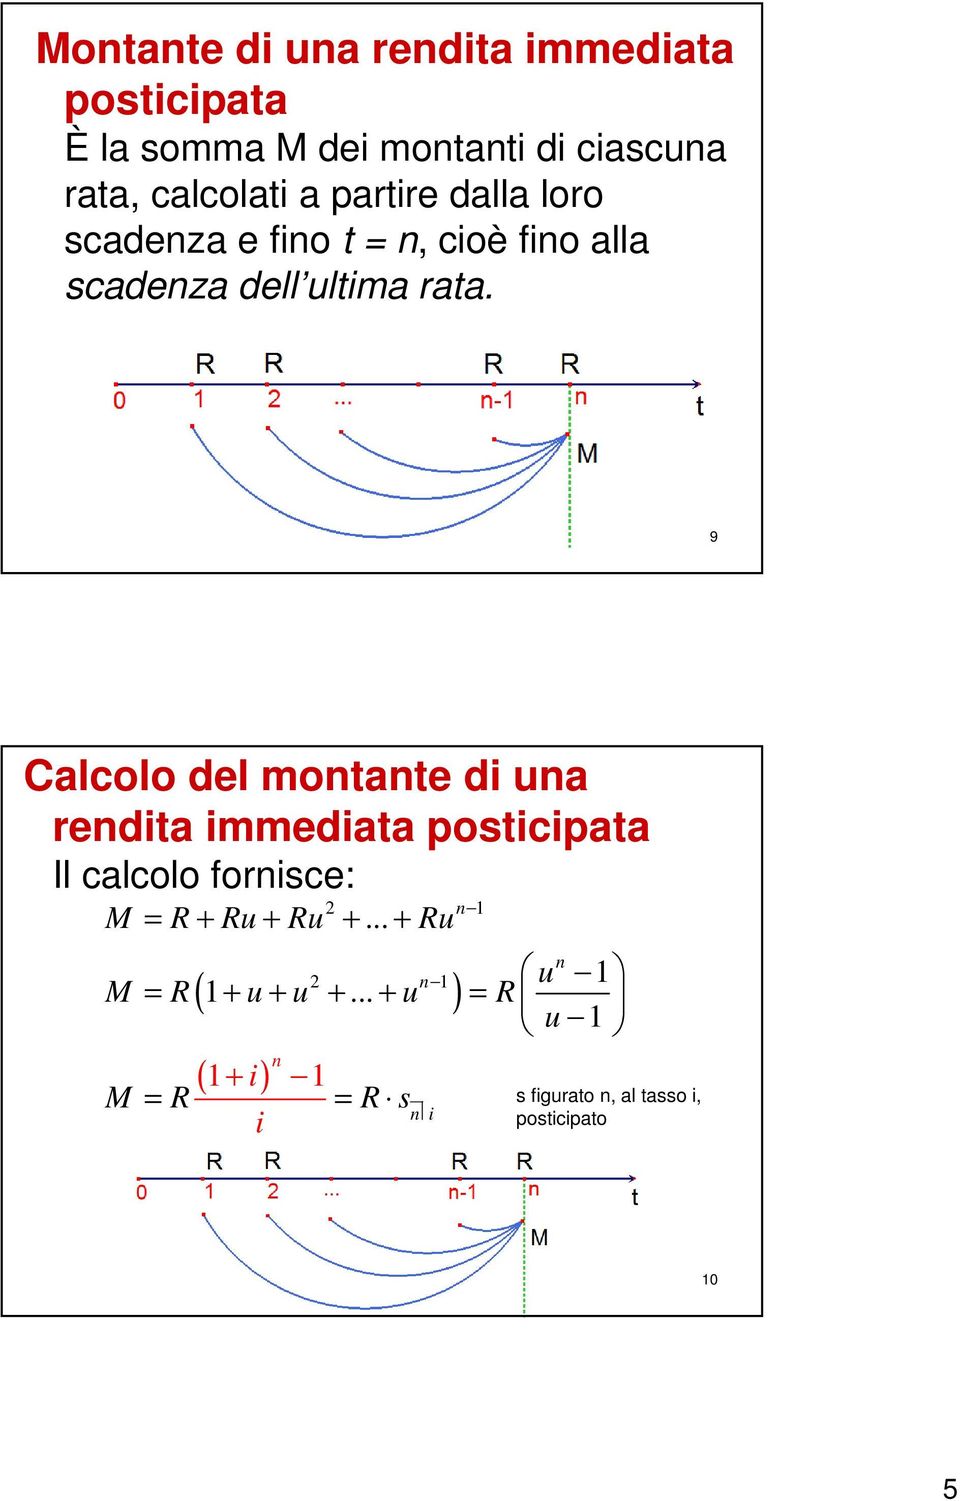 9 Calcolo del motate d ua redta mmedata postcpata Il calcolo forsce: M = R + Ru + Ru +.